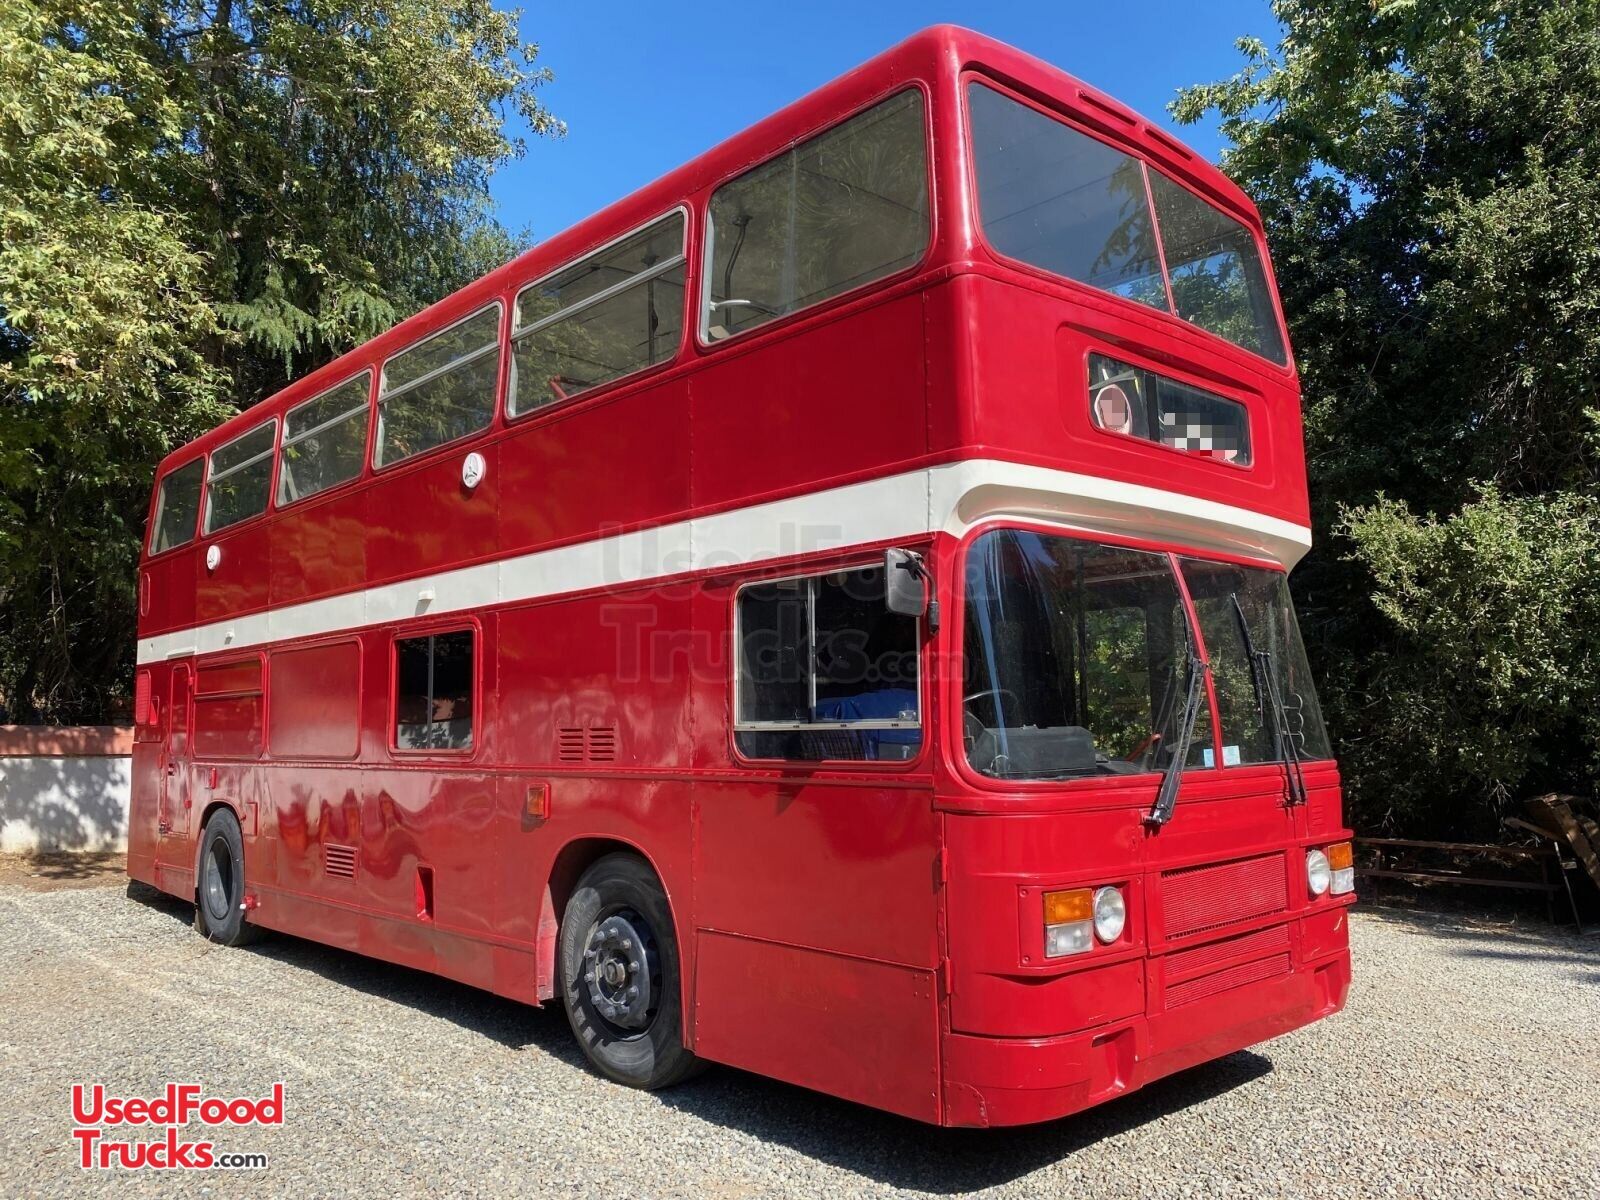 Cirkus straf lav lektier Head-Turning 32' Diesel Leyland Olympian Wood-Fired Pizza Double Decker Bus.